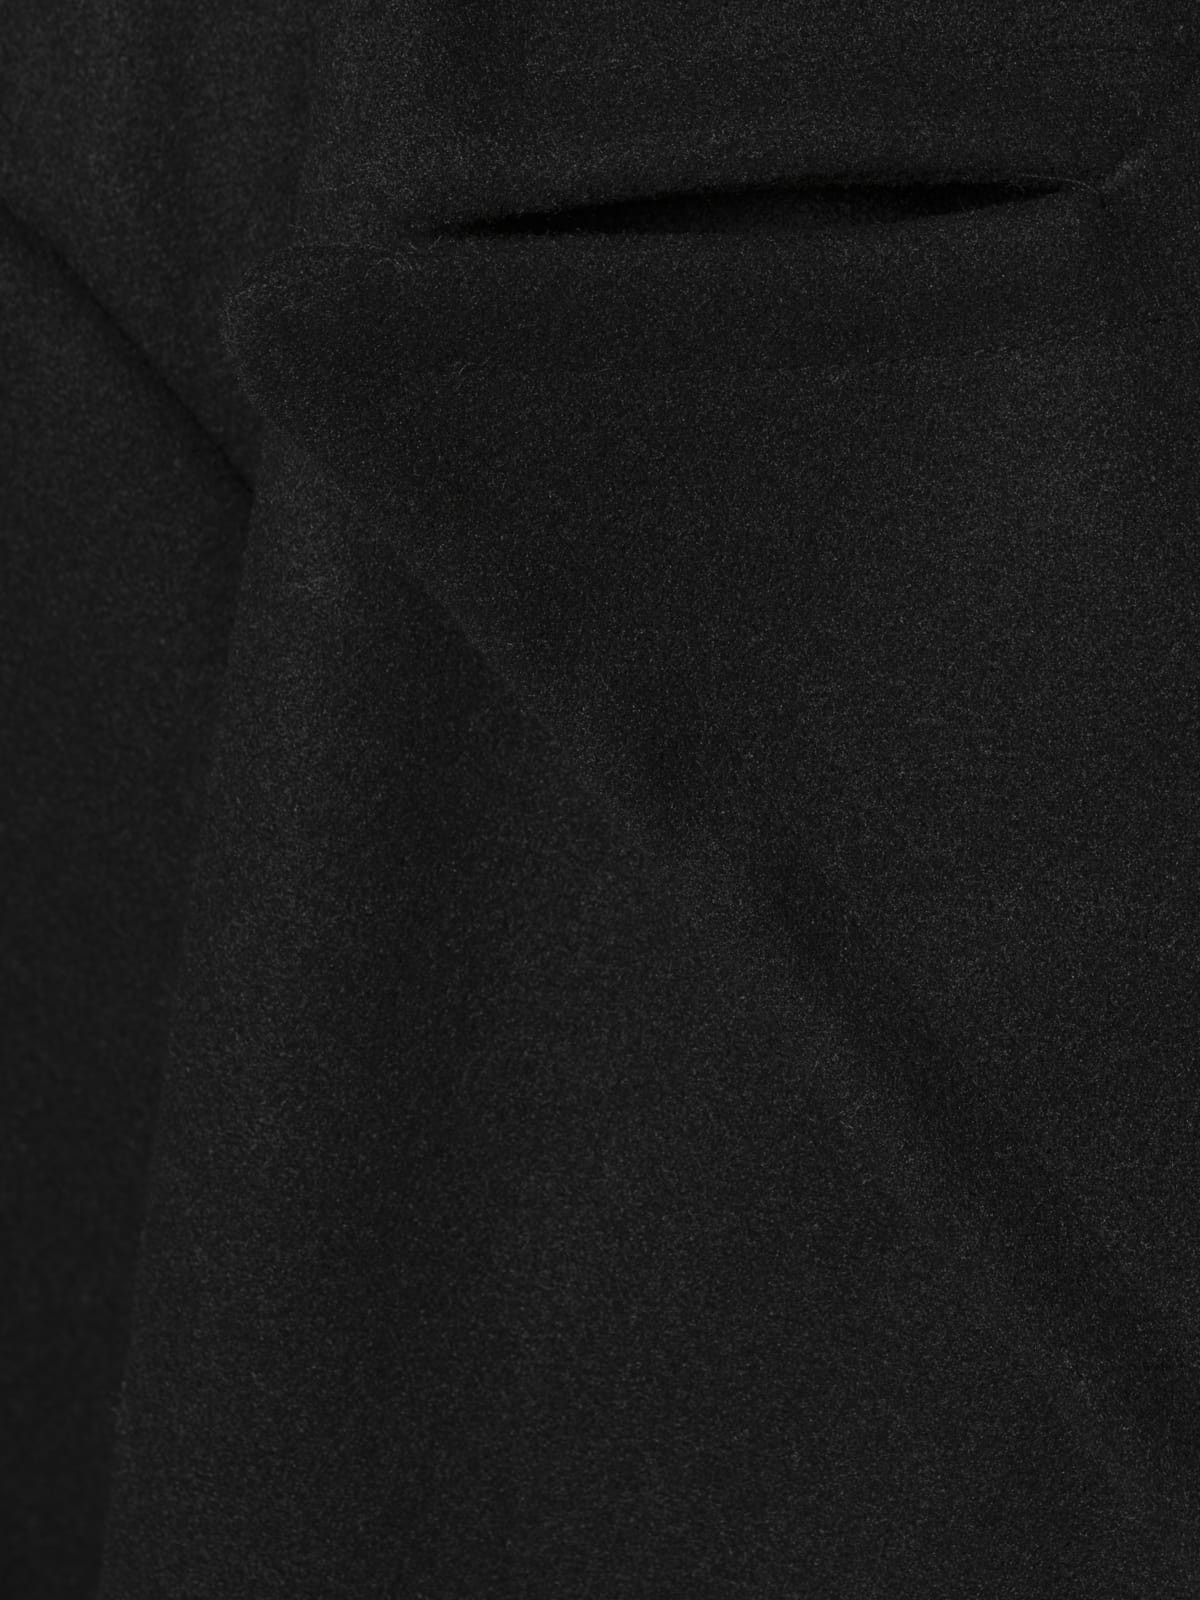 Woman Double button cloth coat Black